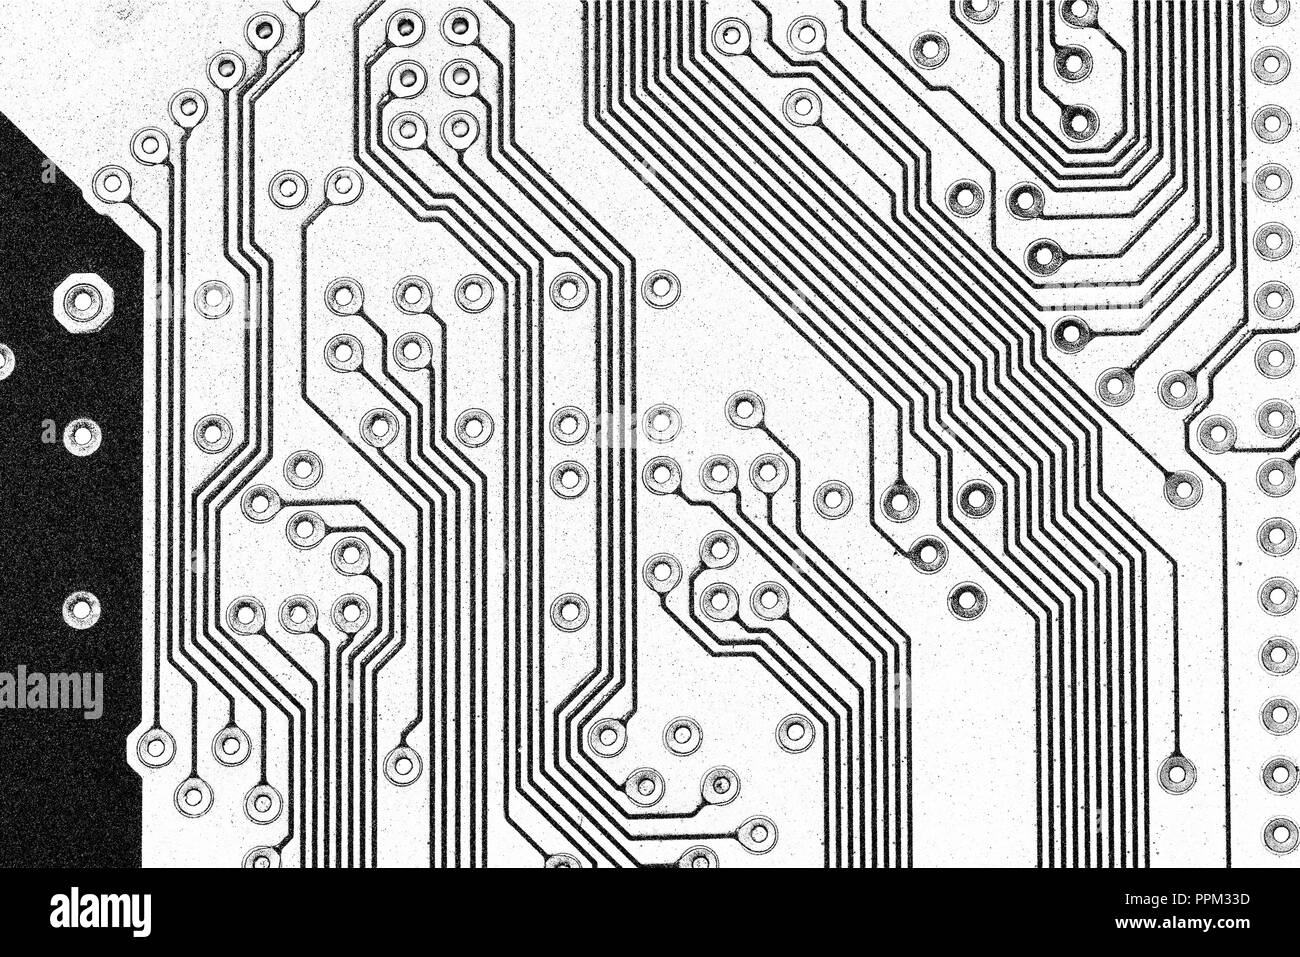 Elektronische Schaltkreise eines Computers Stockfoto